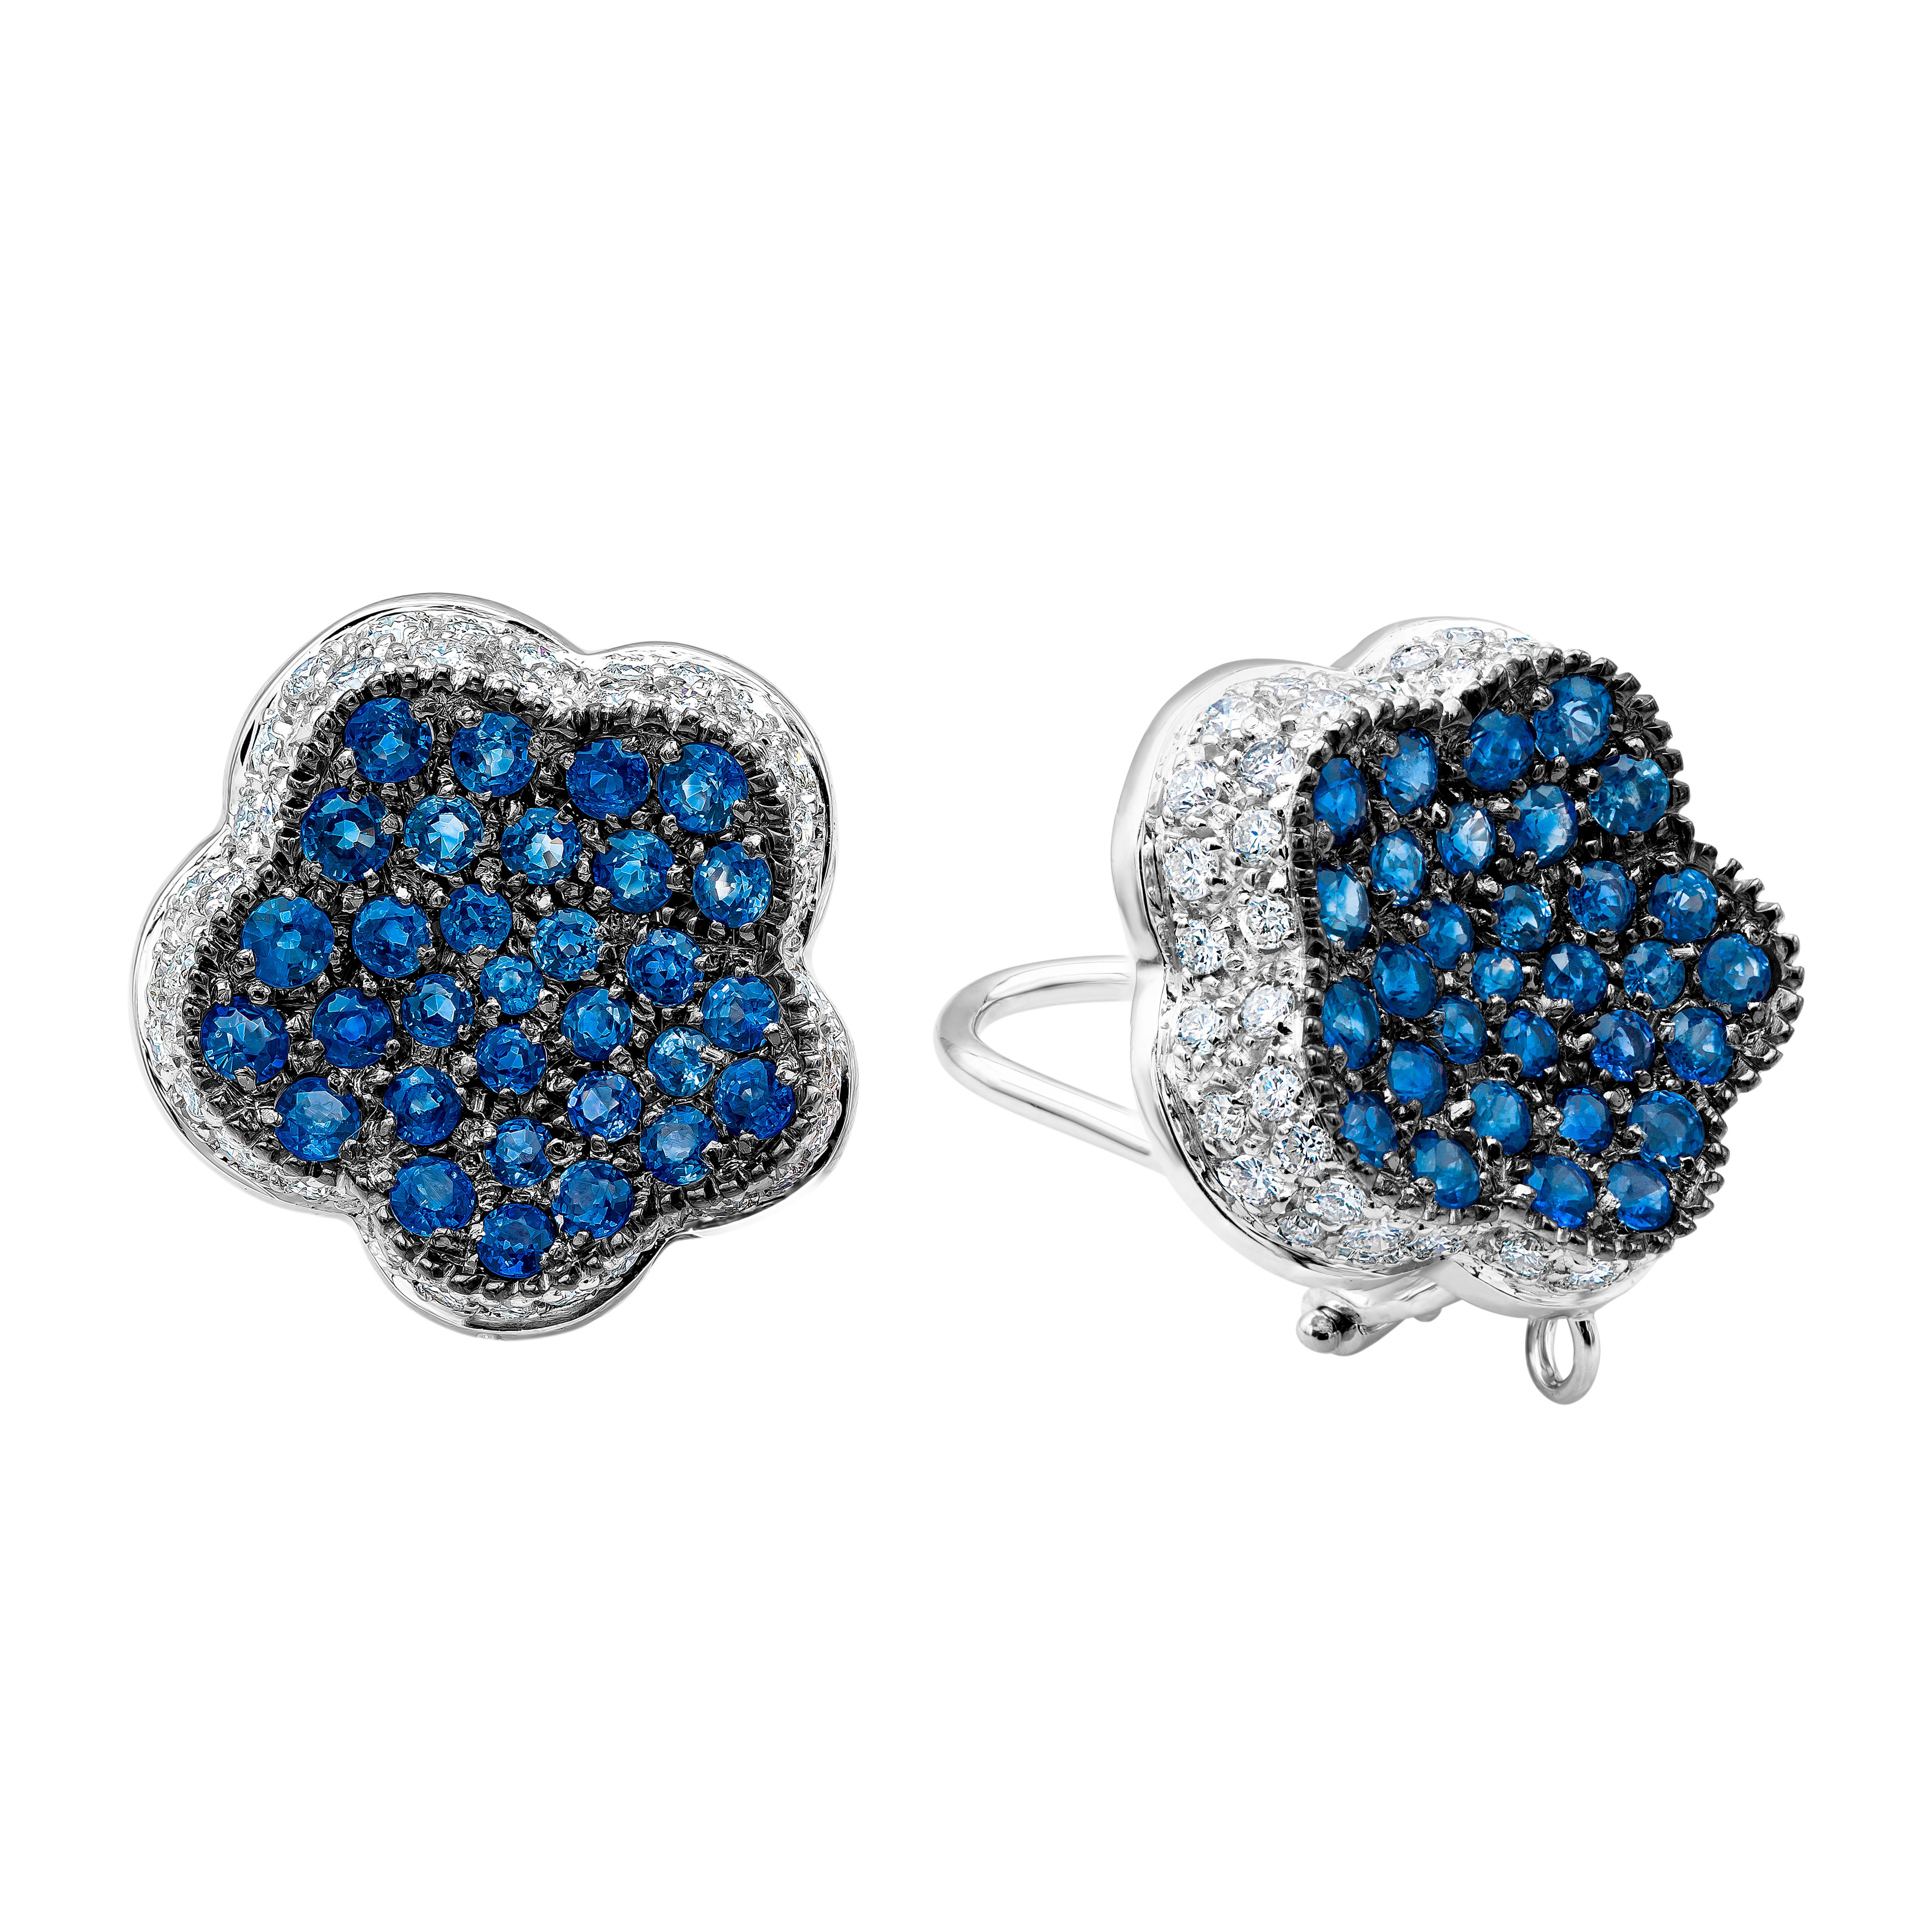 Ein einzigartiges Paar Ohrringe im Clip-on-Design mit farbenprächtigen runden blauen Saphiren, mikrogefasst in 18 Karat Weißgold. Abgerundet mit runden Brillanten um die blauen Saphire, die wie ein Blumenmotiv in die Ohrringe eingefasst sind. Die